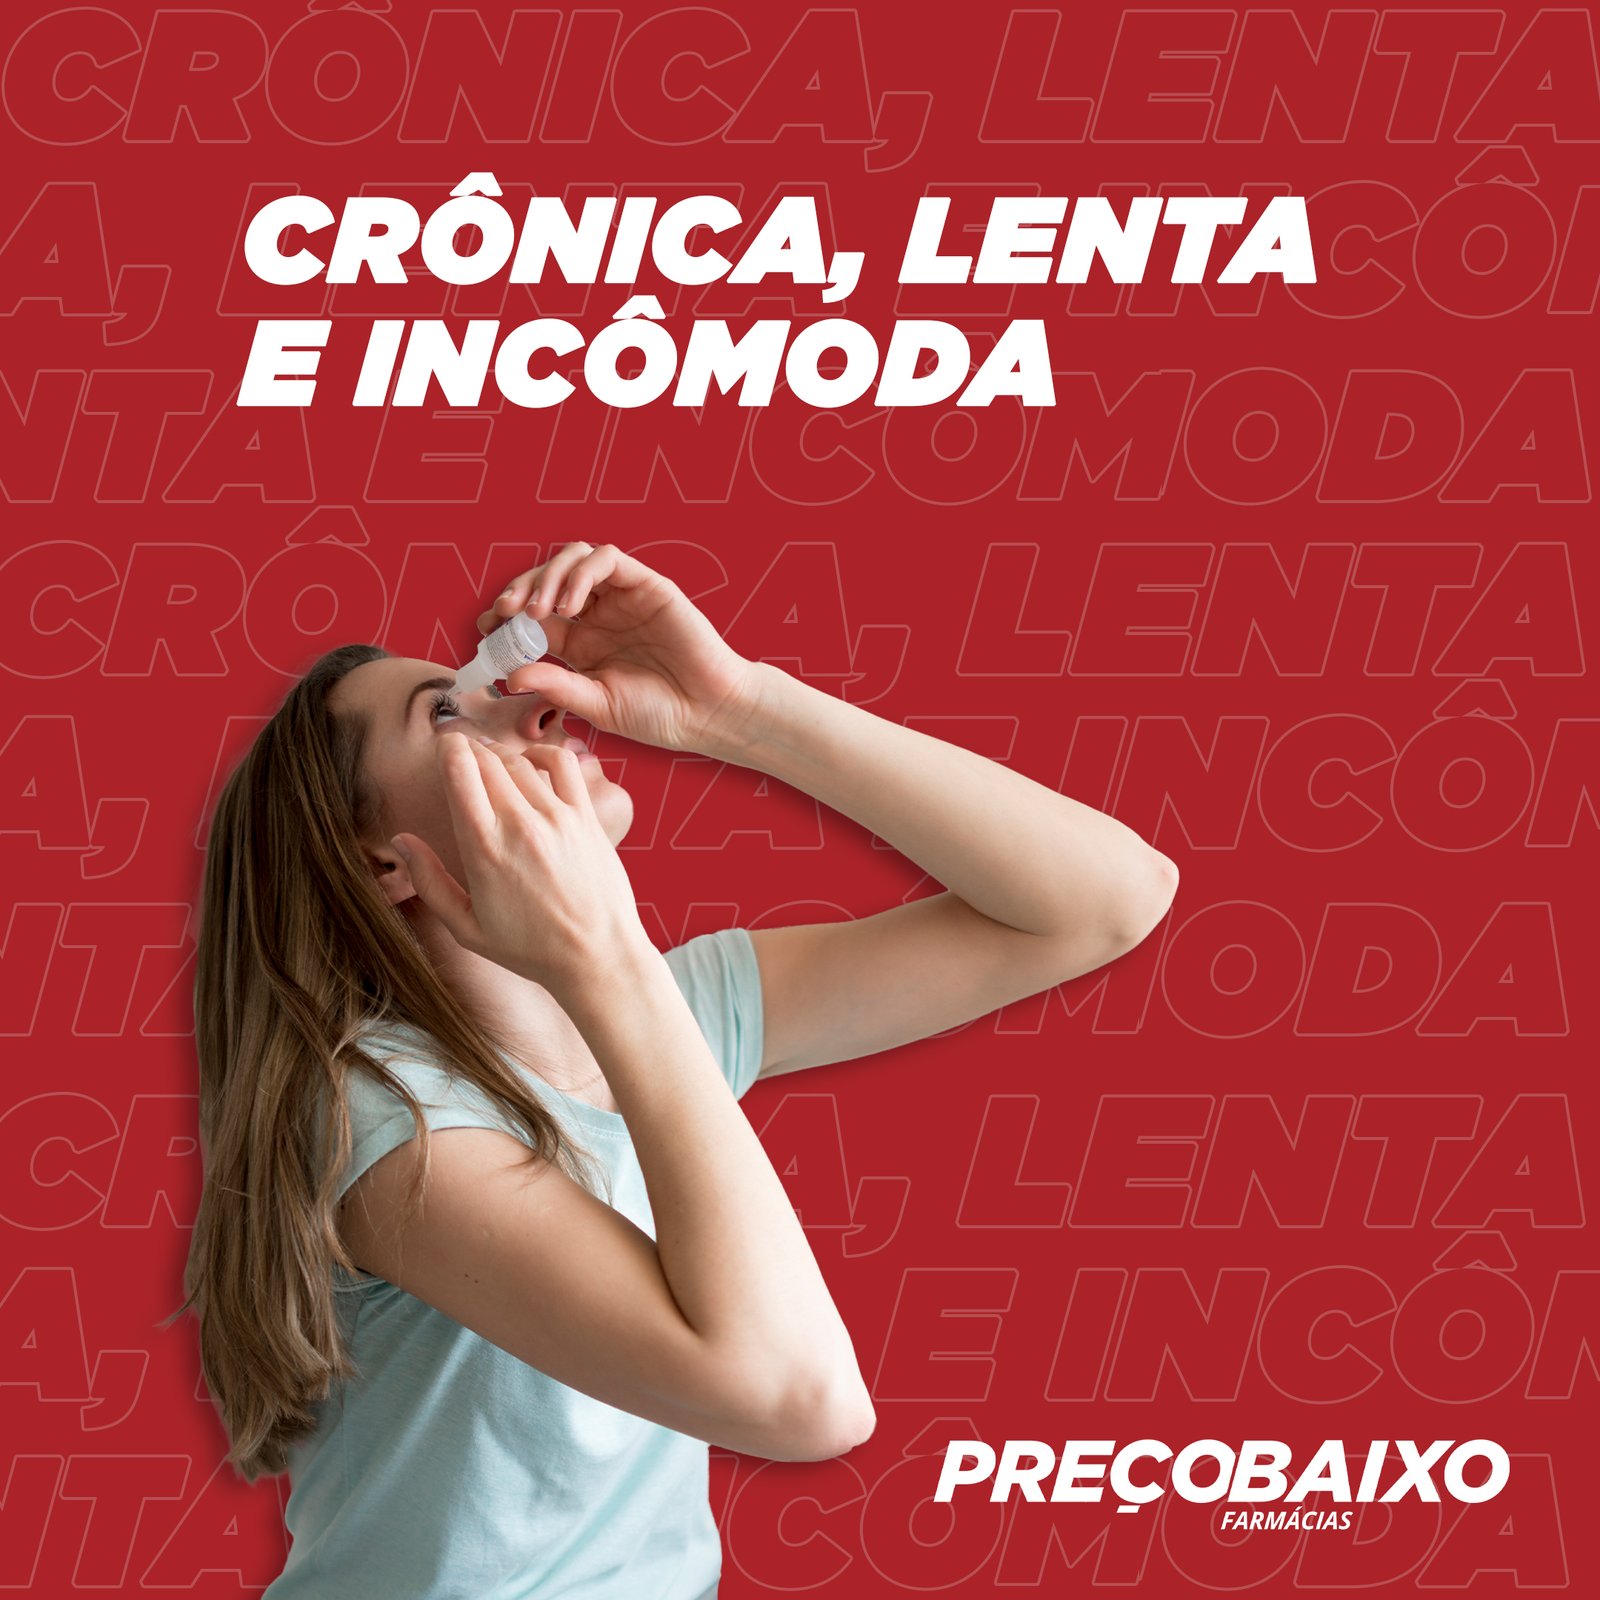 Read more about the article Crônica, lenta e incômoda